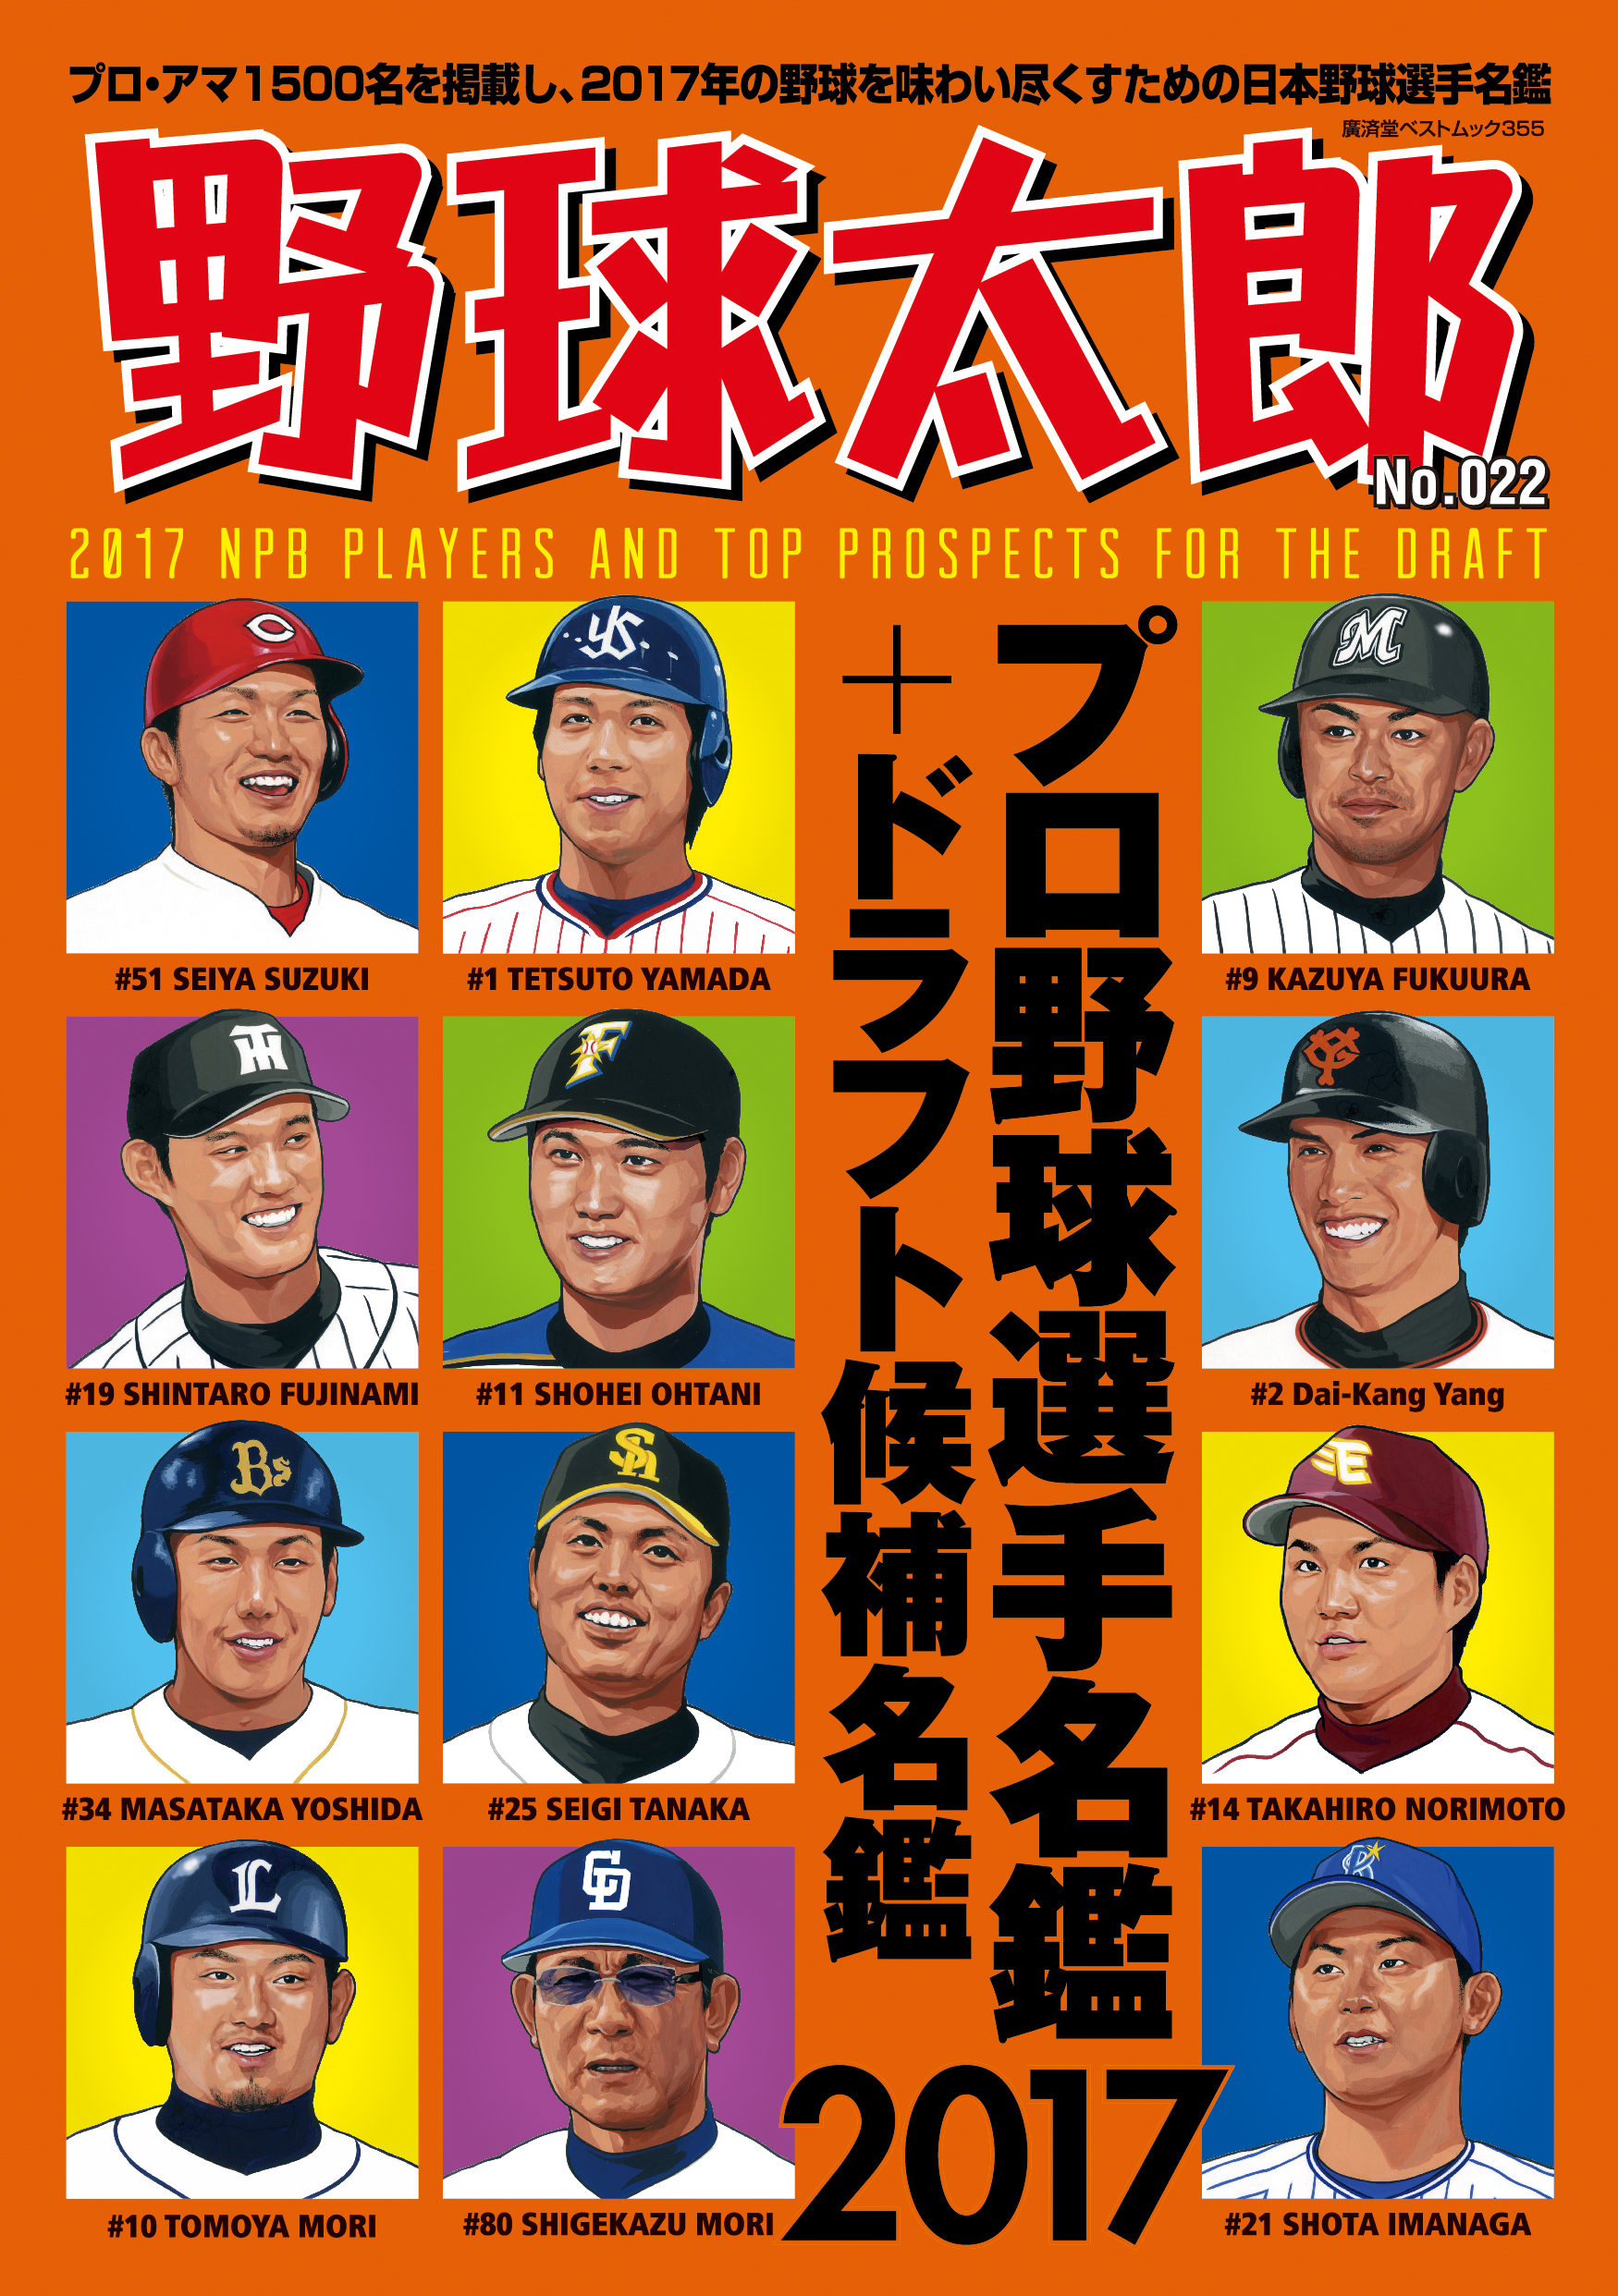 お詫びと訂正『野球太郎No.022 プロ野球選手名鑑+ドラフト候補選手名鑑2017』